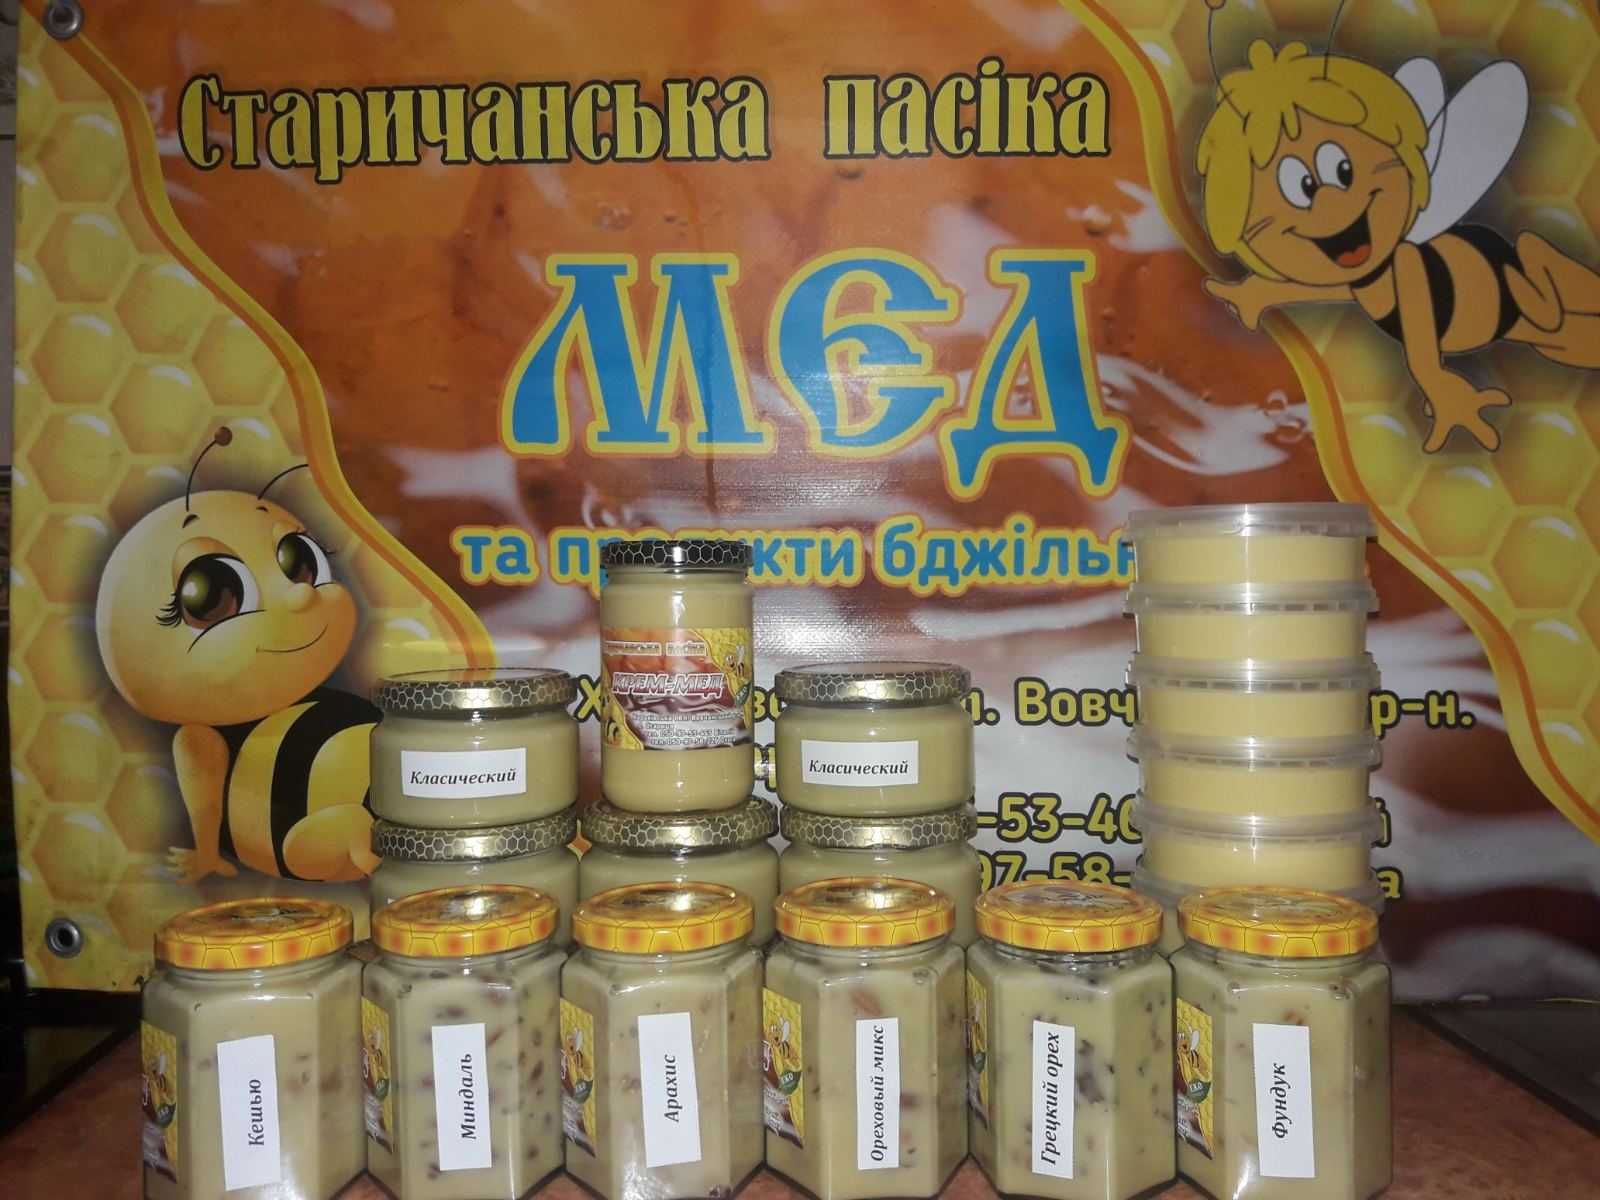 Продам Мёд со своей пасики,и продукты пчеловодства